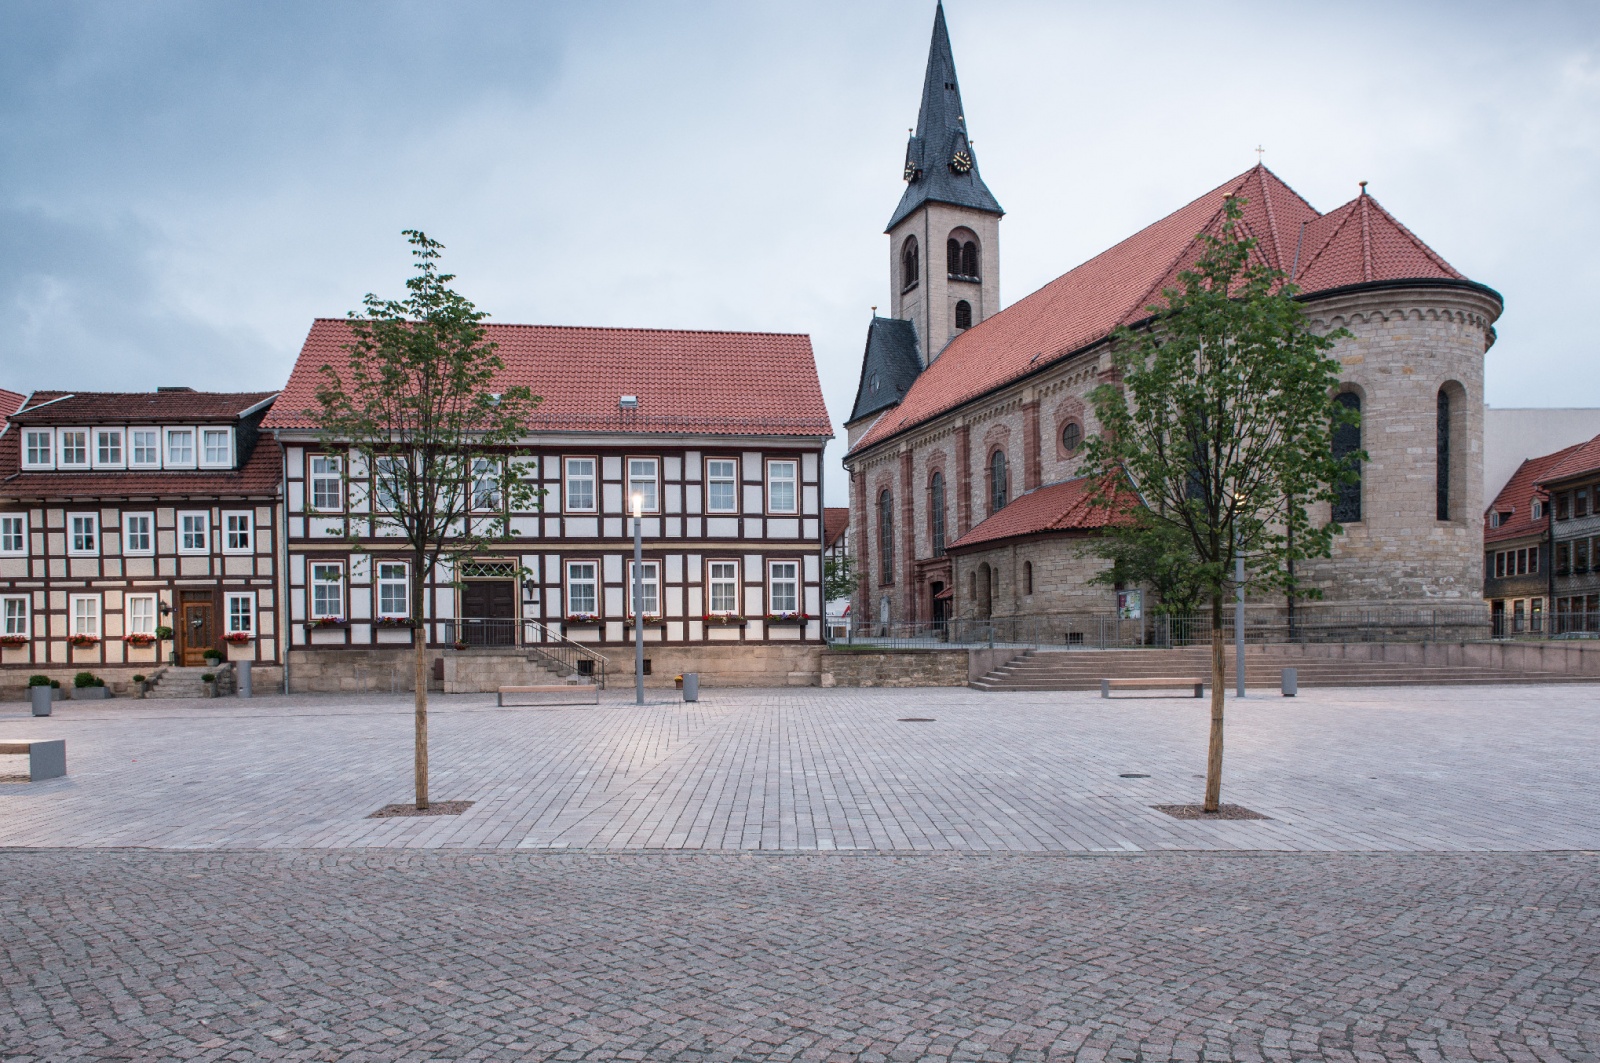 Friedensplatz und Rossmarkt Worbis, Friedensplatz mit Denkmal St. Nepomuk, Bild: Thomas Langreder